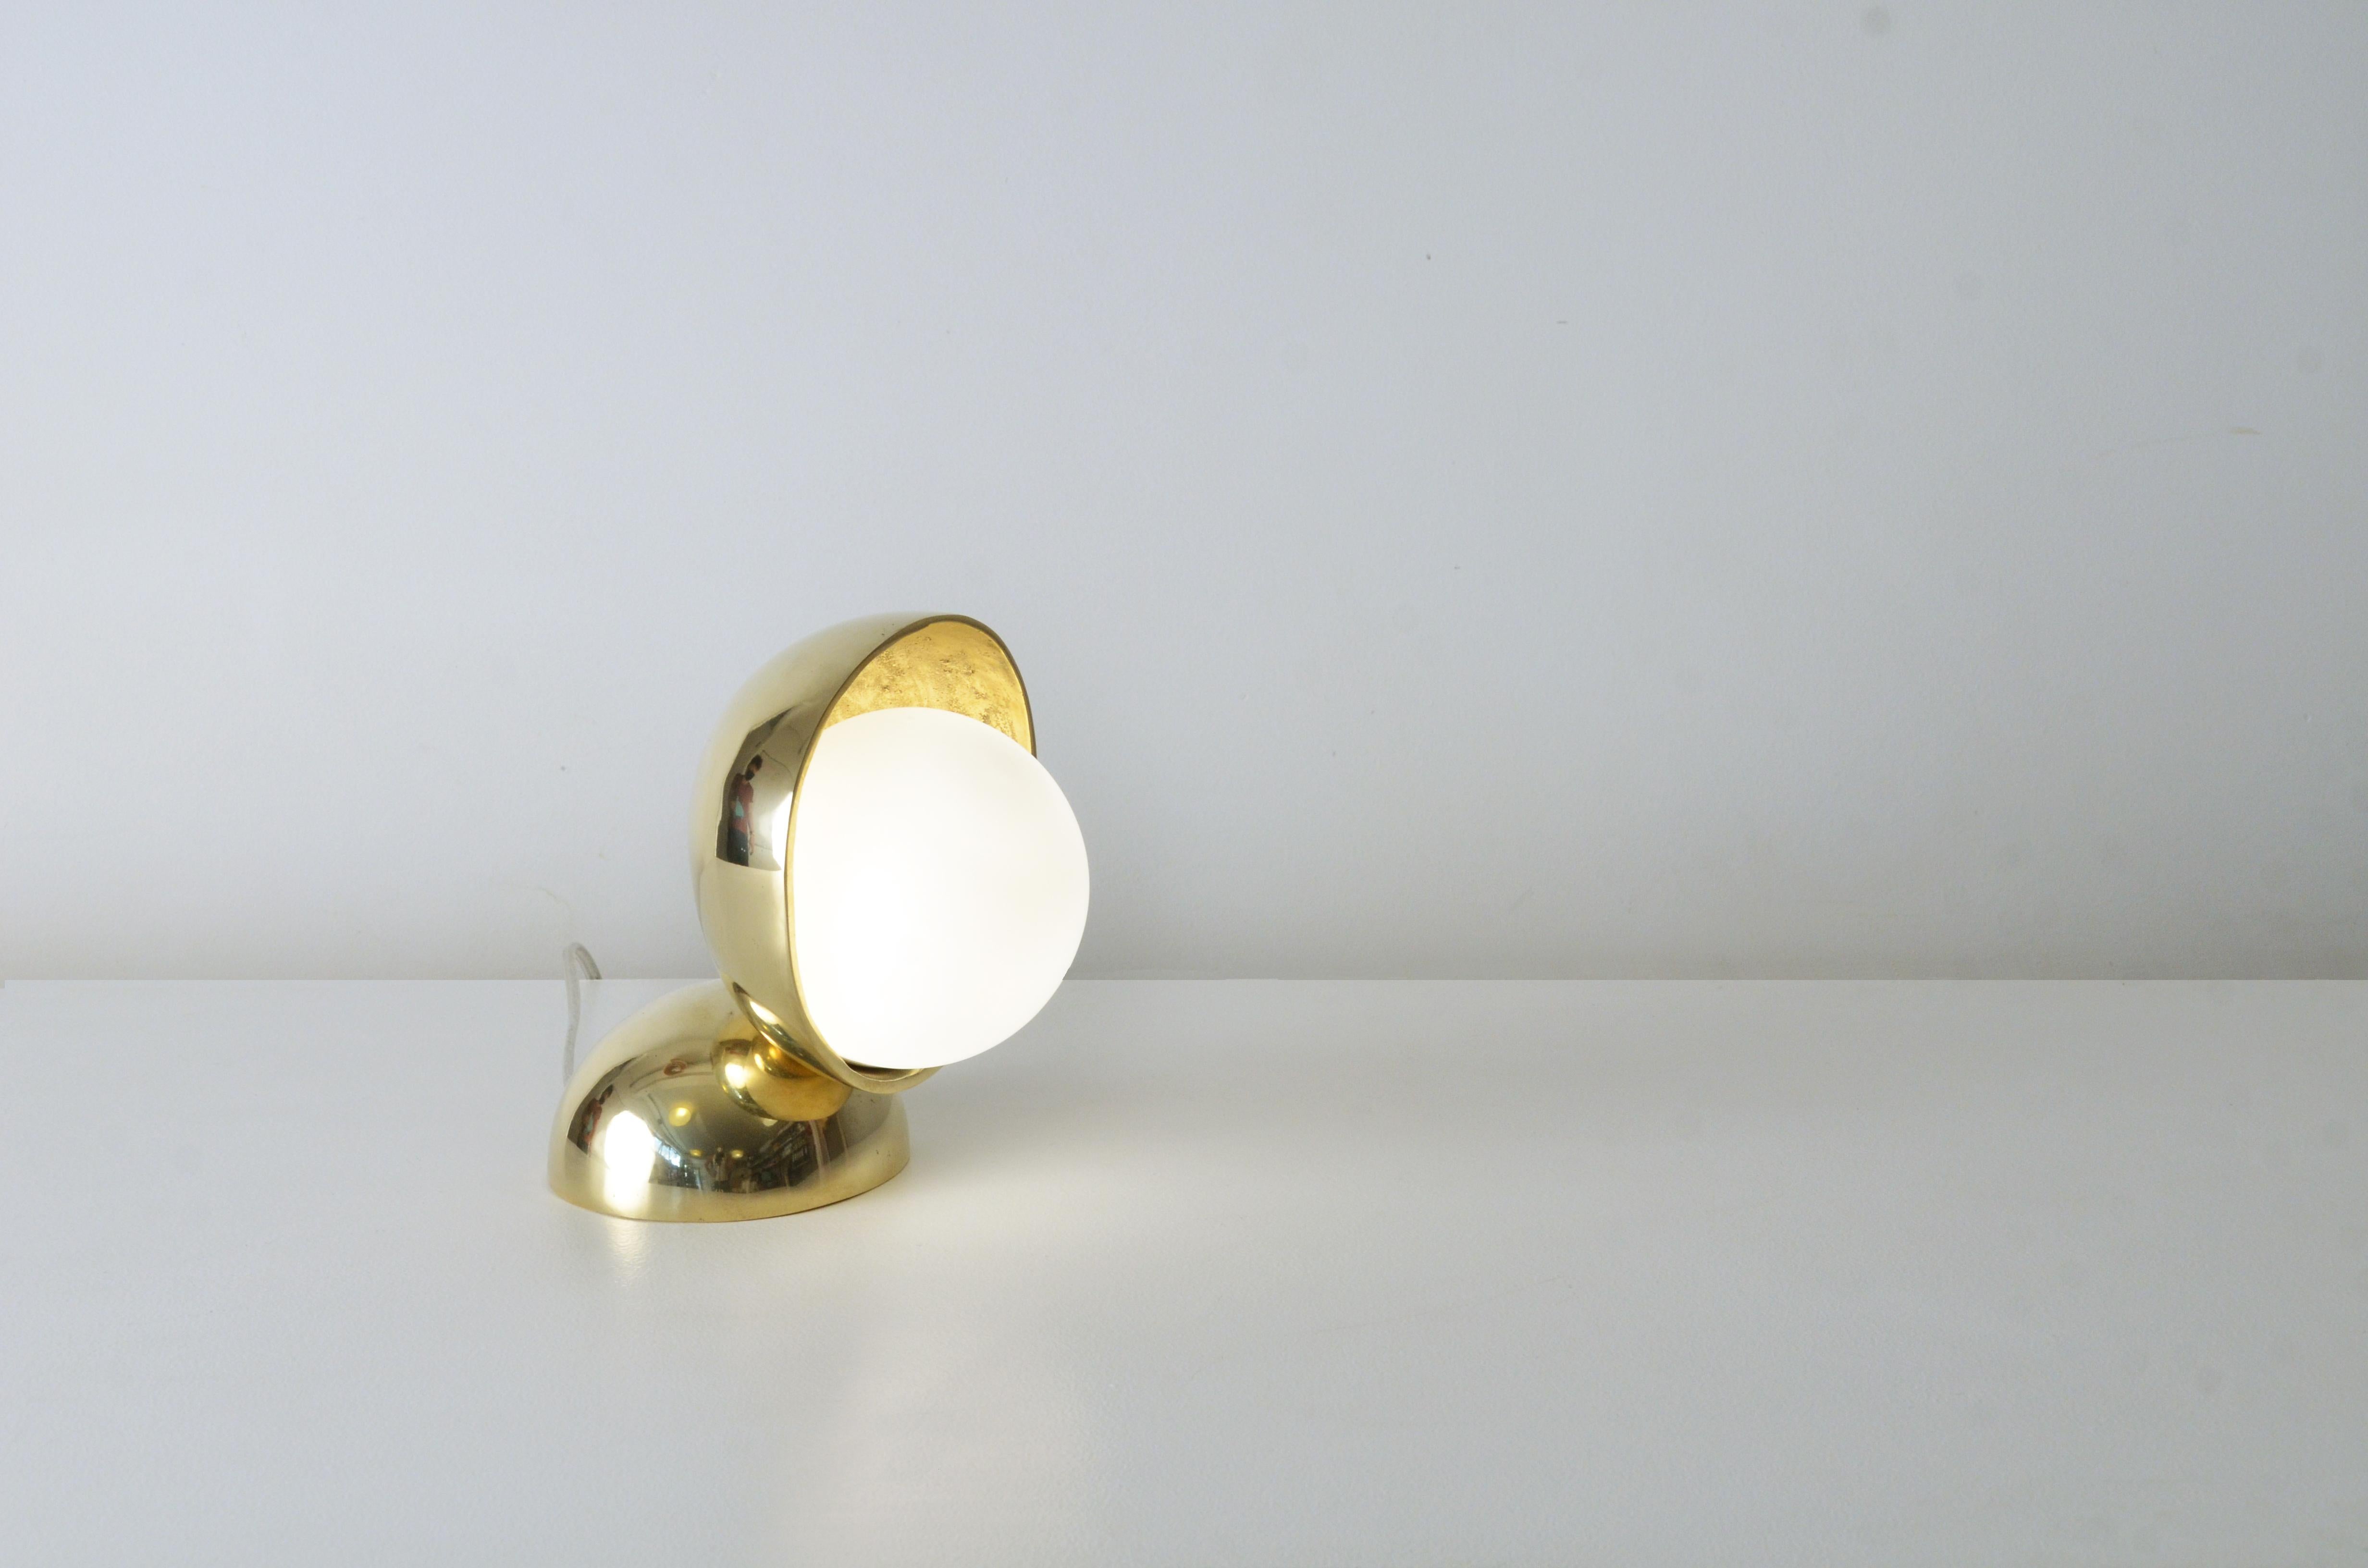 Cette lampe de table contemporaine dorée est une petite pièce entièrement réalisée en bronze coulé avec un verre de lait au milieu. La lampe (G9) se trouve à l'intérieur de ce verre rond et laiteux, qui transforme la lumière émise par la lampe en un